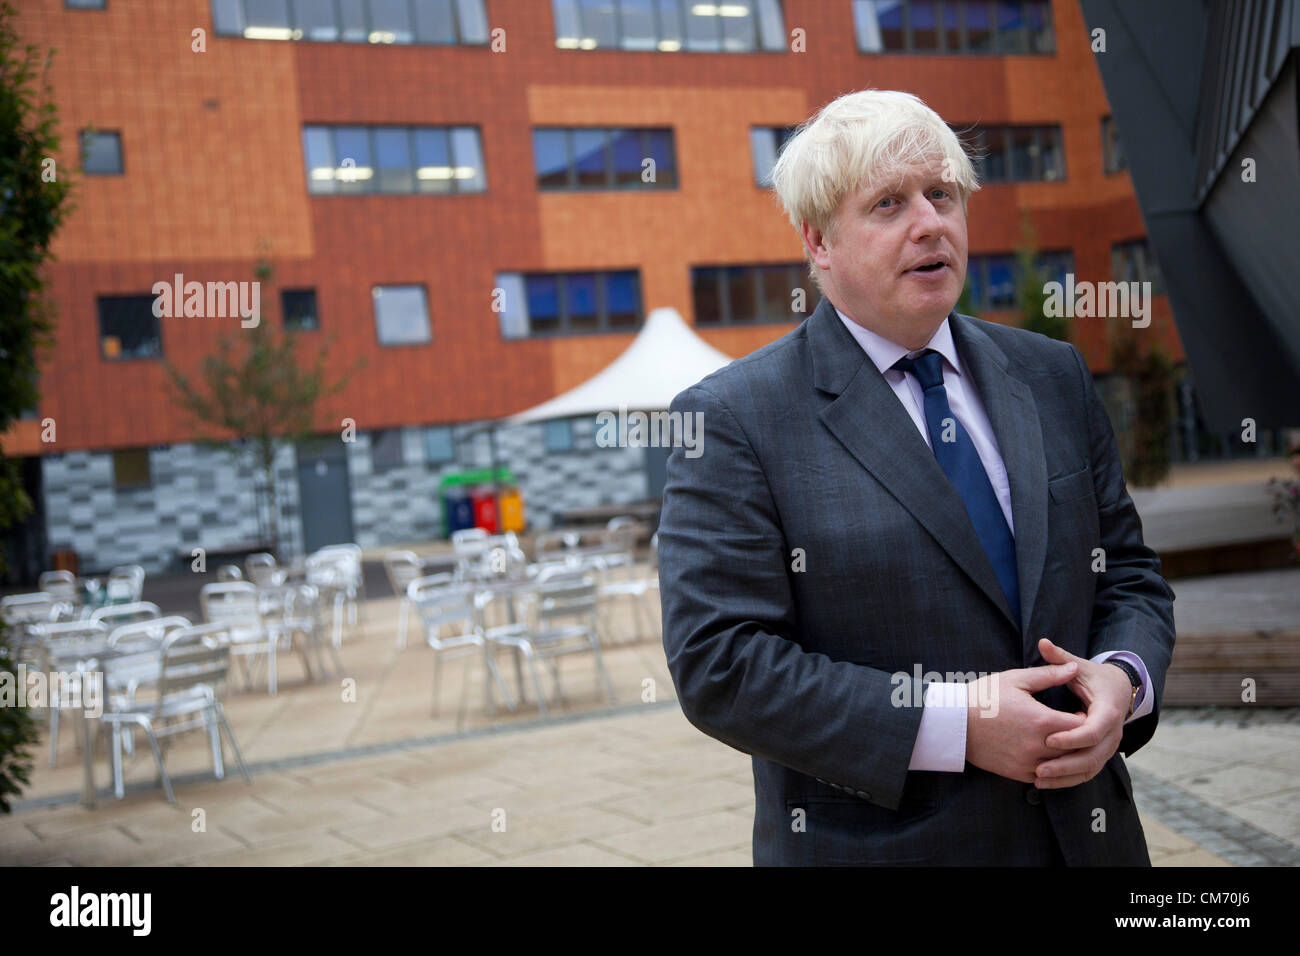 El Alcalde de Londres, Boris Johnson asiste a la Academia de Pimlico anunciando planes para hacer de Londres un líder mundial de la educación. Foto de stock